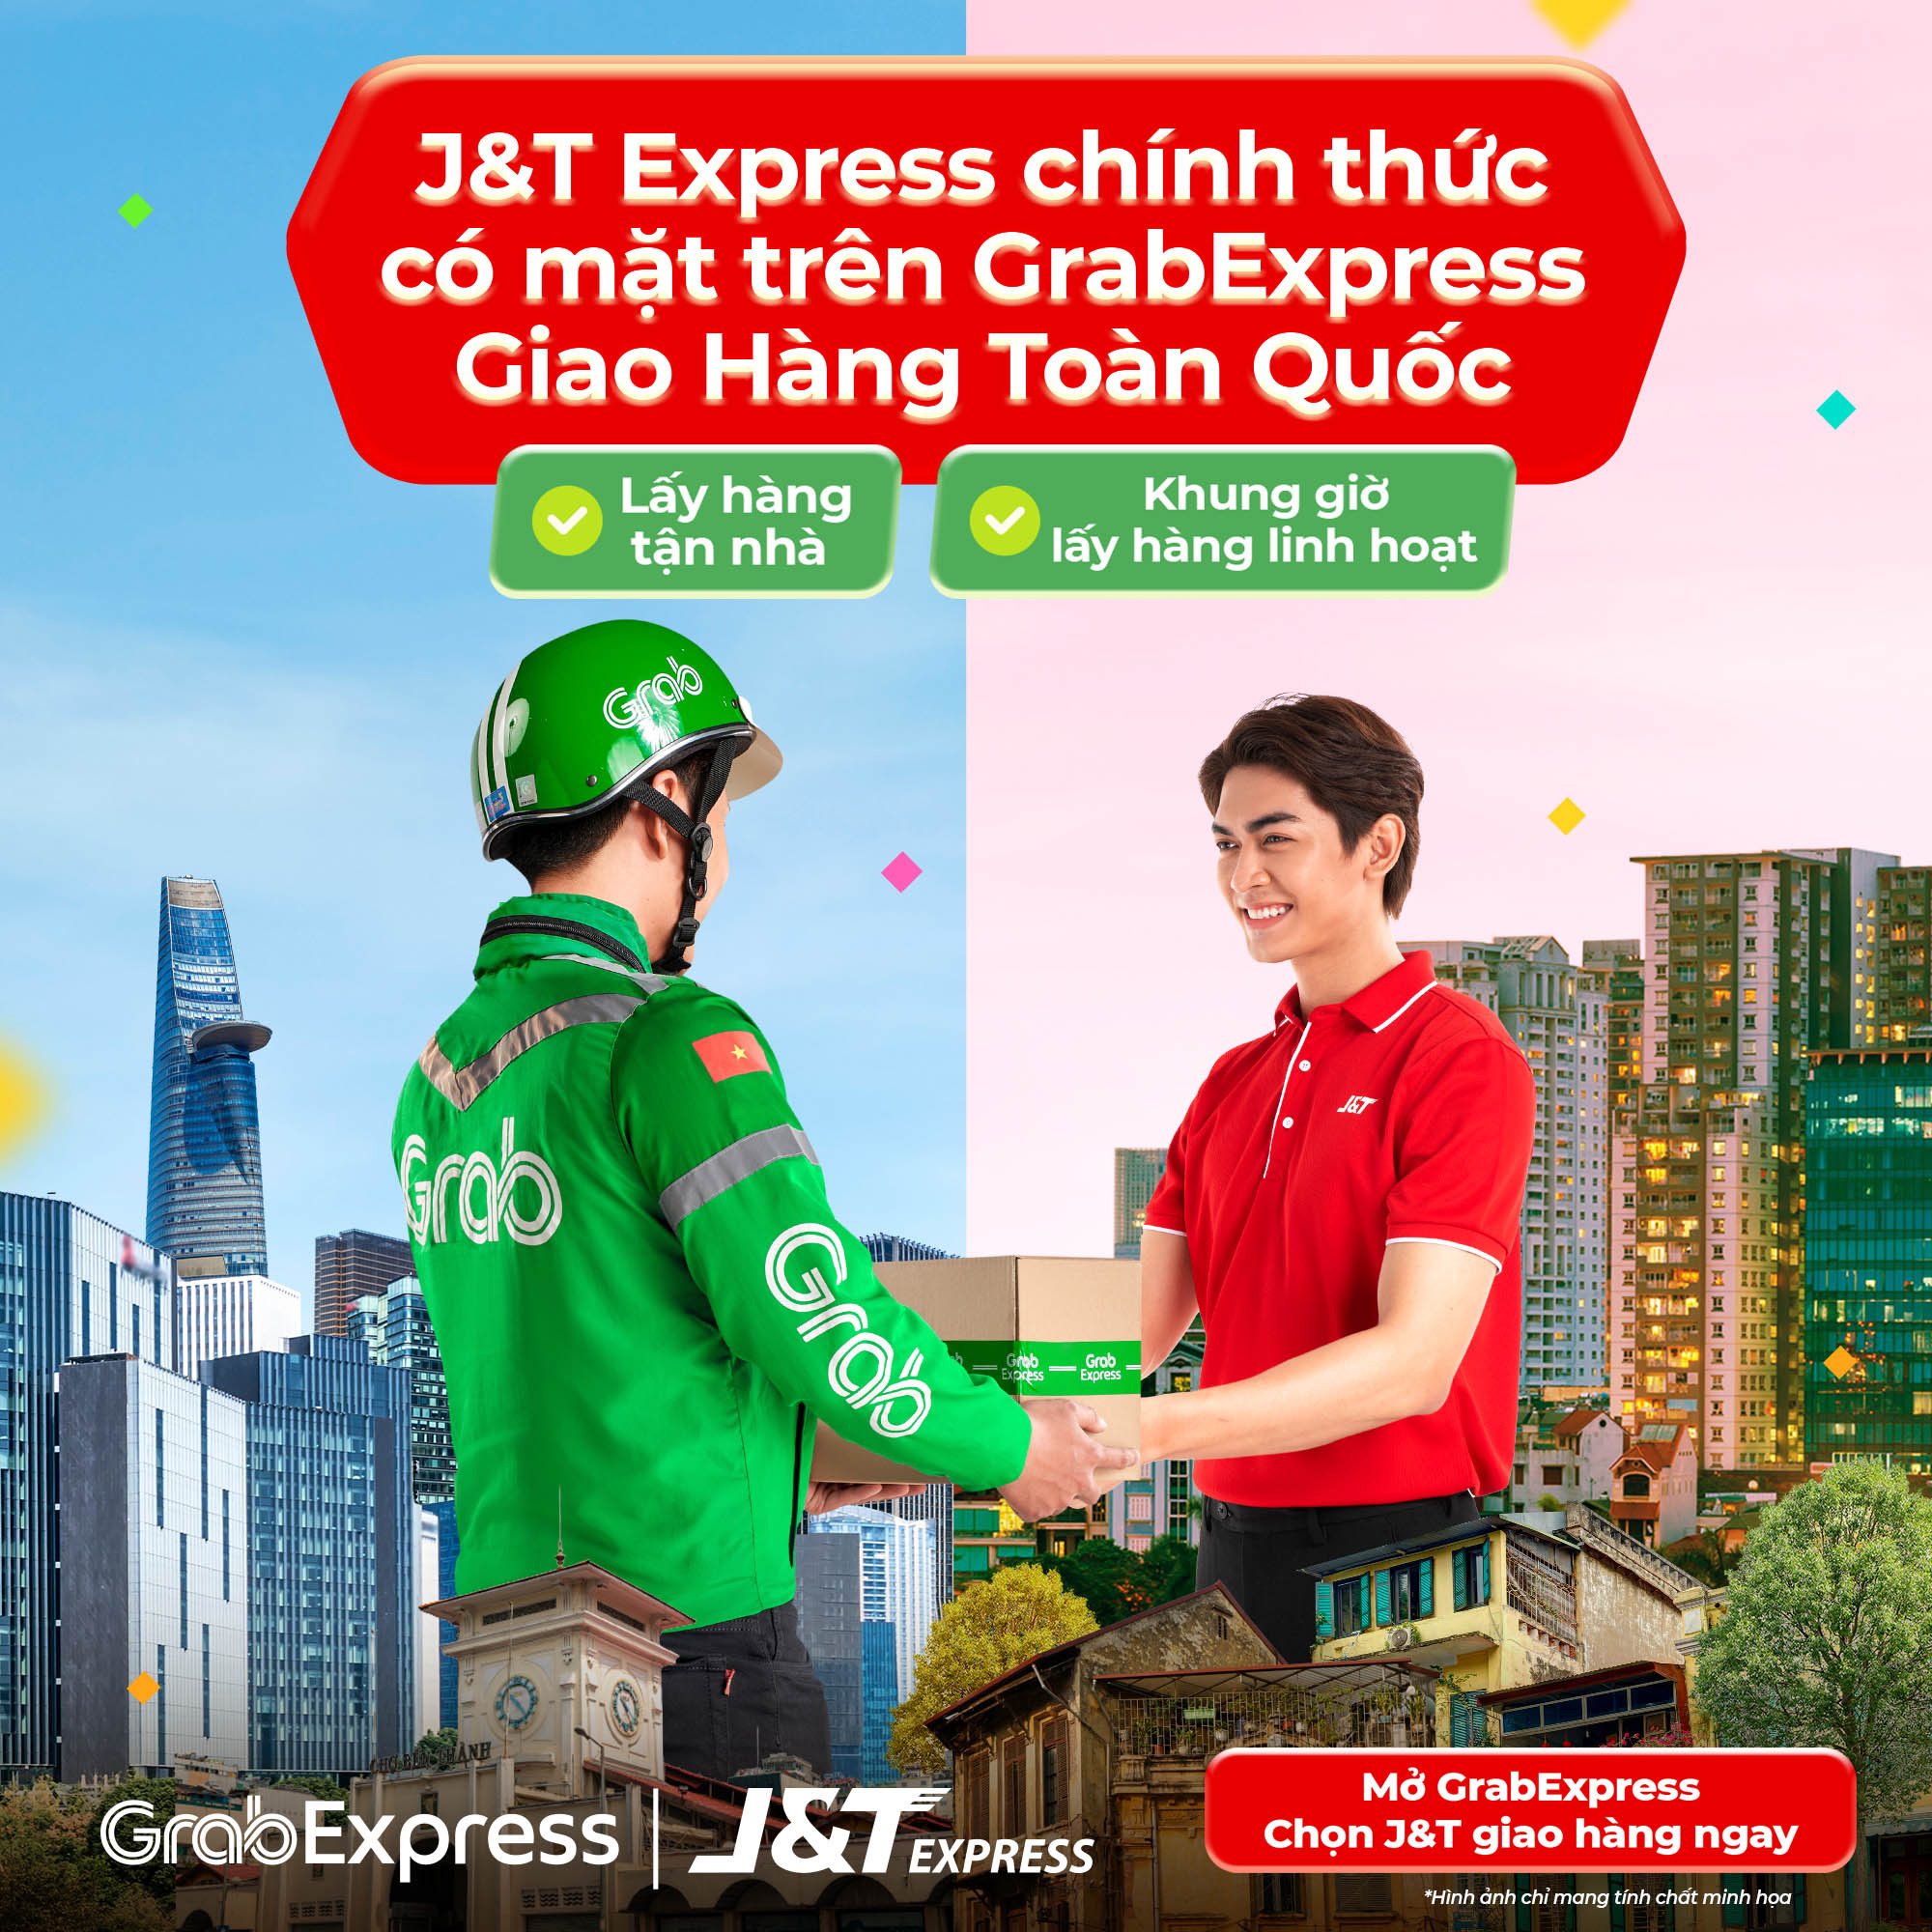 J&T Express chính thức có mặt trên GrabExpress - Giao hàng toàn quốc